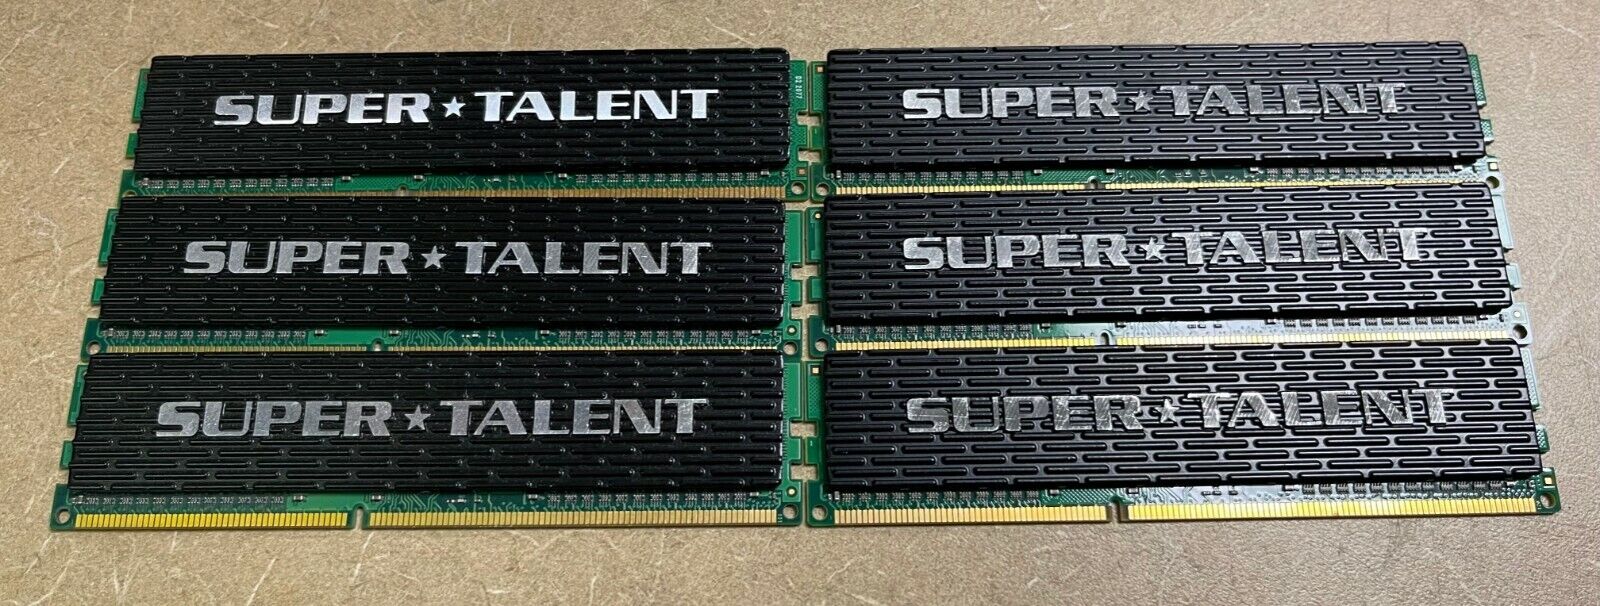 6GB SUPER TALENT WA133UX3G8 DDR3 1333 3G(6X1G) KITS CL8 MEMORY 